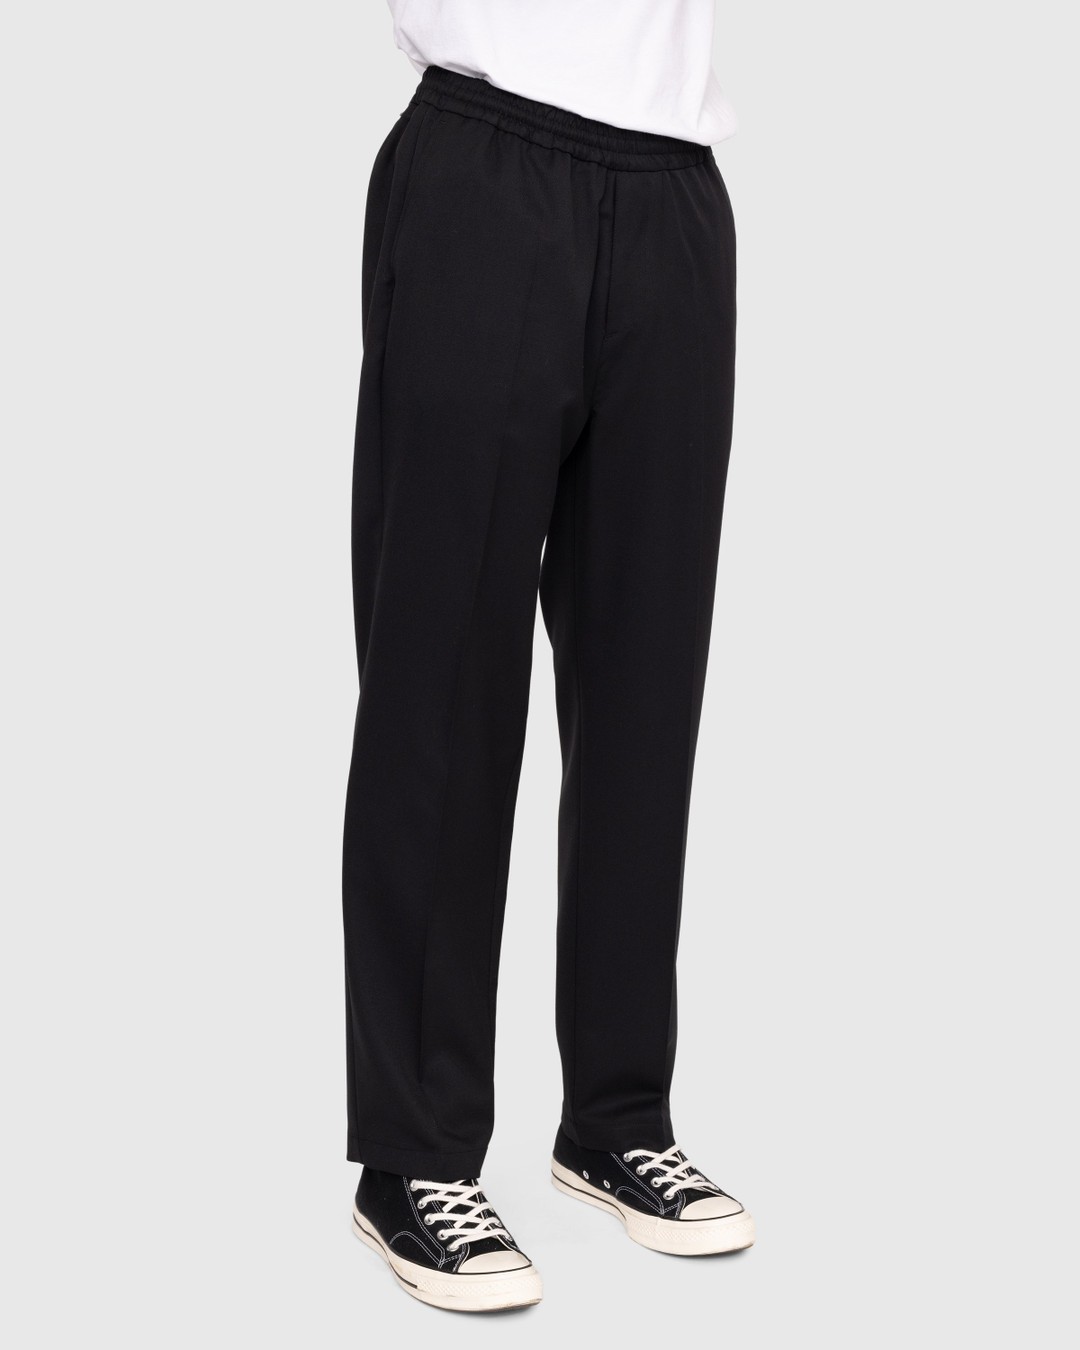 Highsnobiety – Wool Blend Elastic Pants Black - Trousers - Black - Image 3